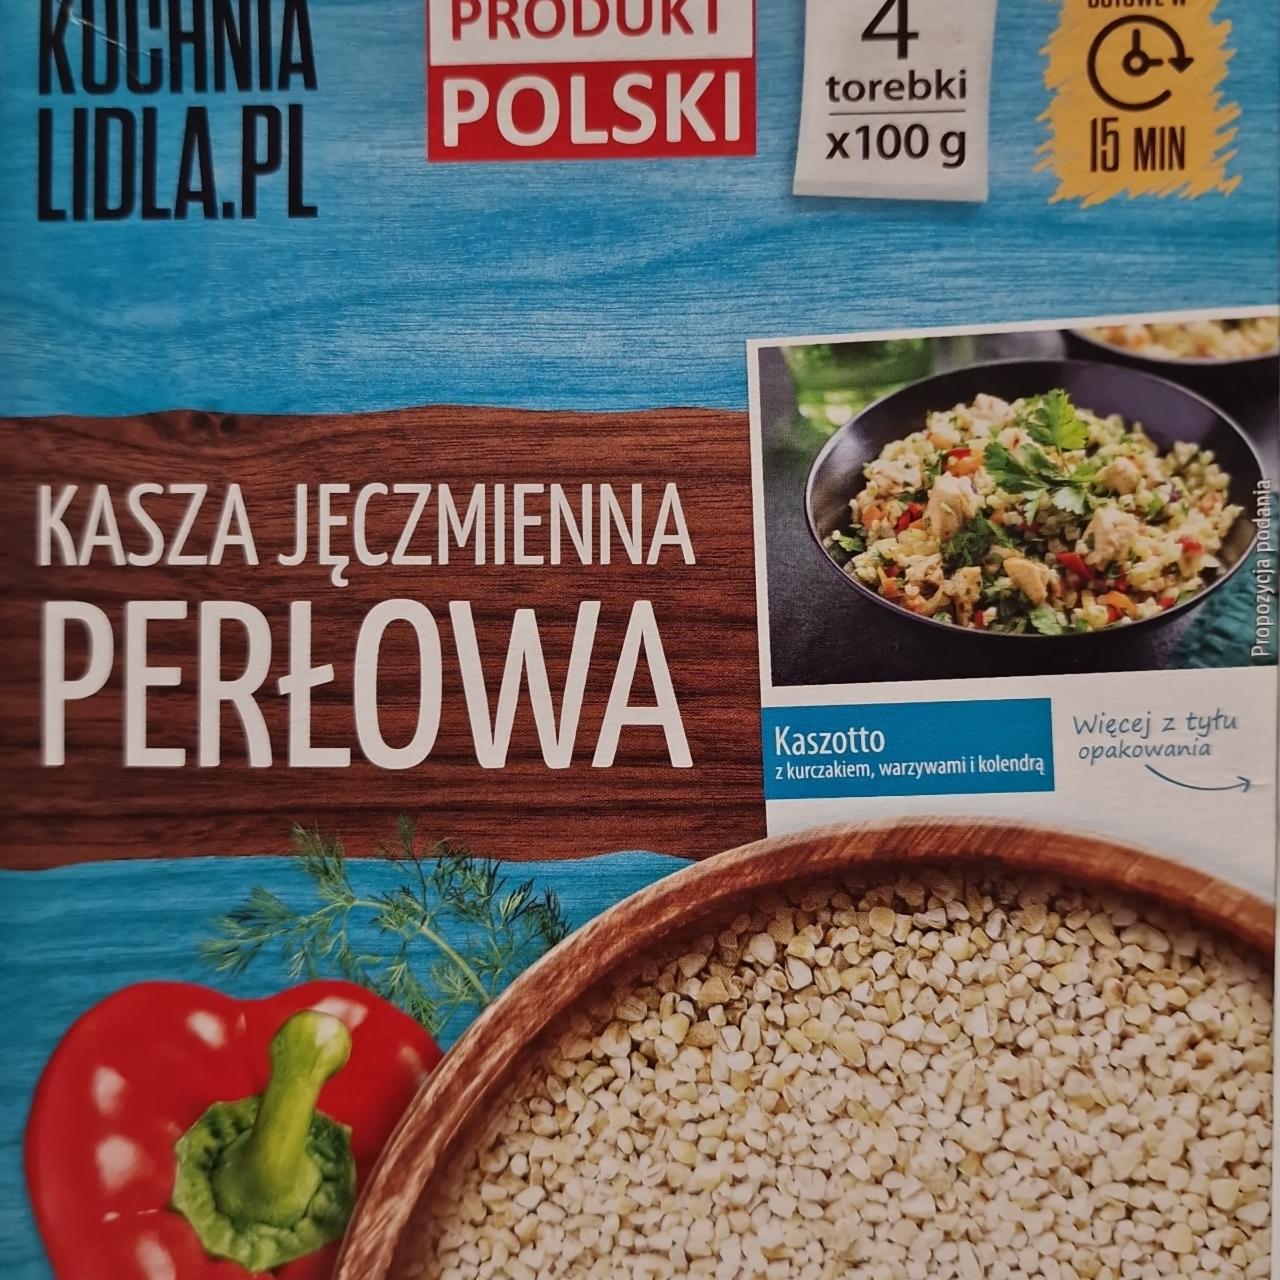 Фото - Kasza jęczmienna perłowa Kuchnia Lidla.Pl